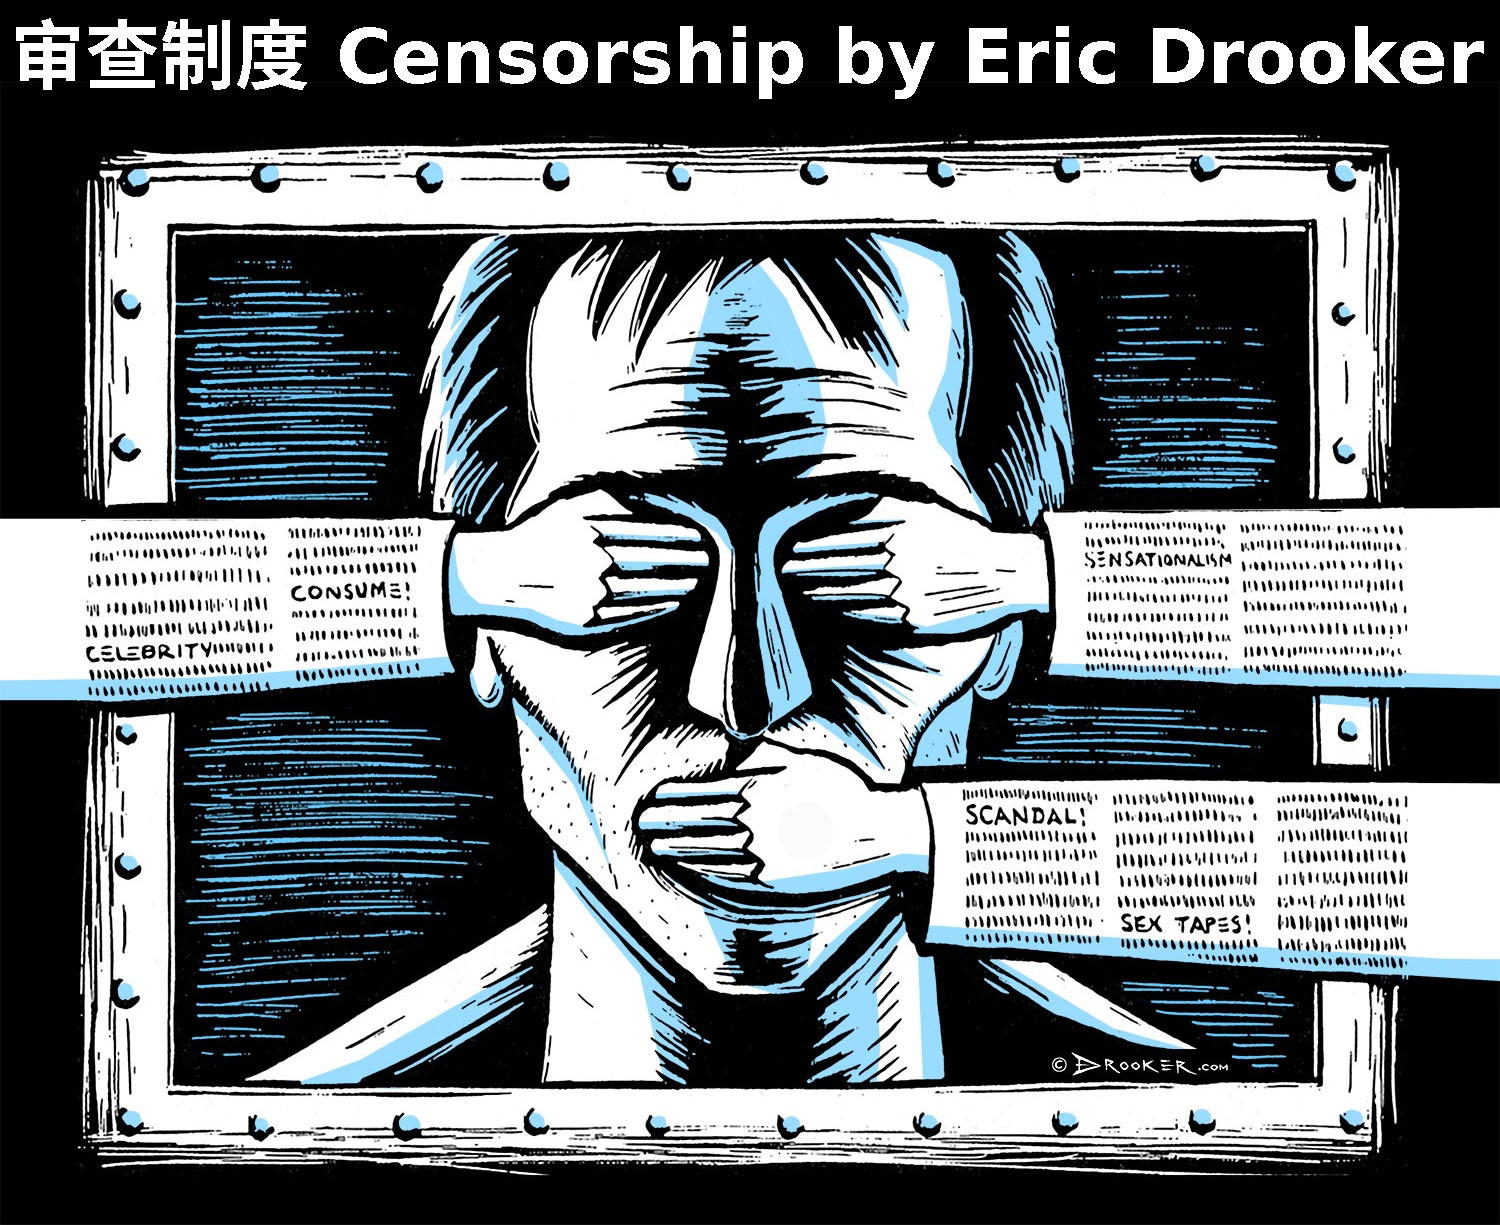 Eric Drooker censorship